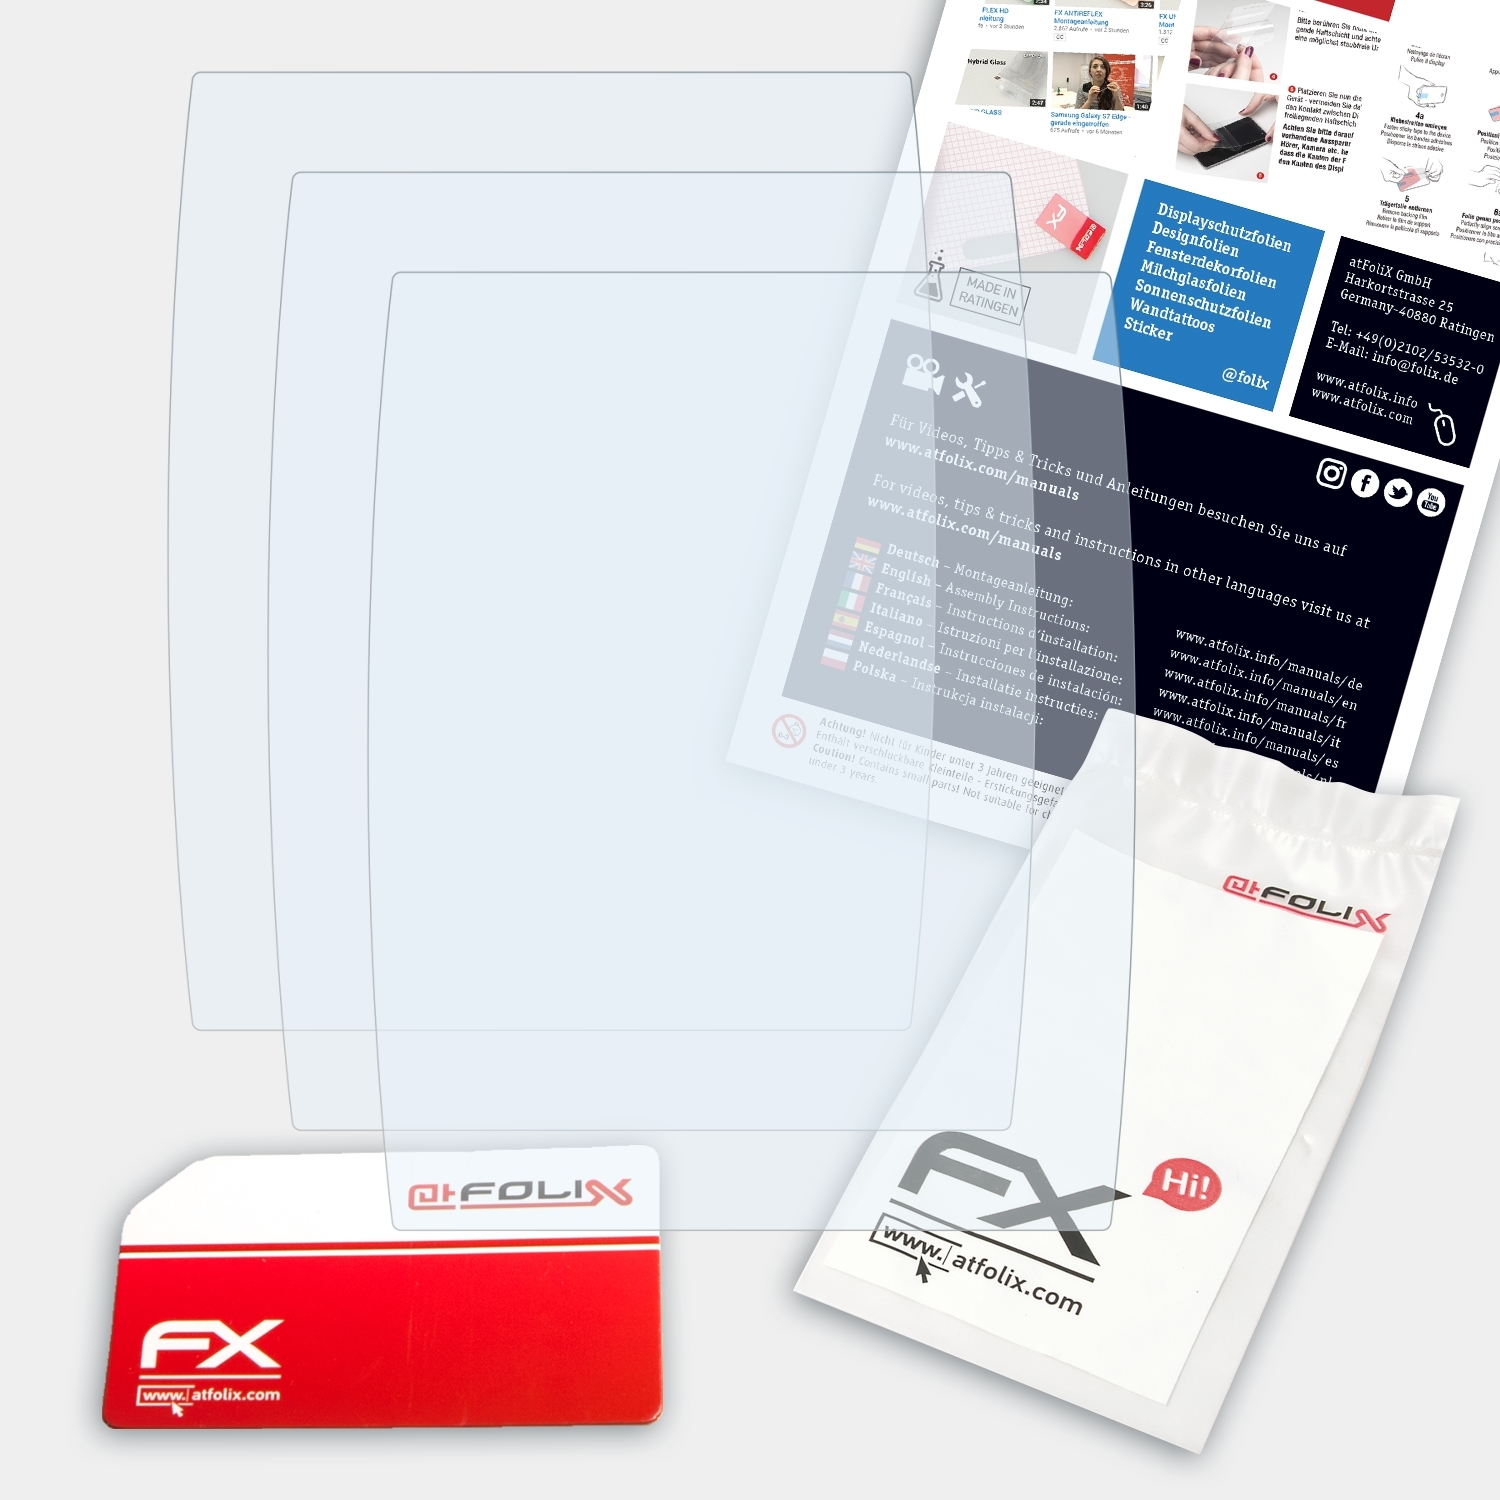 ATFOLIX 3x FX-Clear Displayschutz(für Pebble Steel)